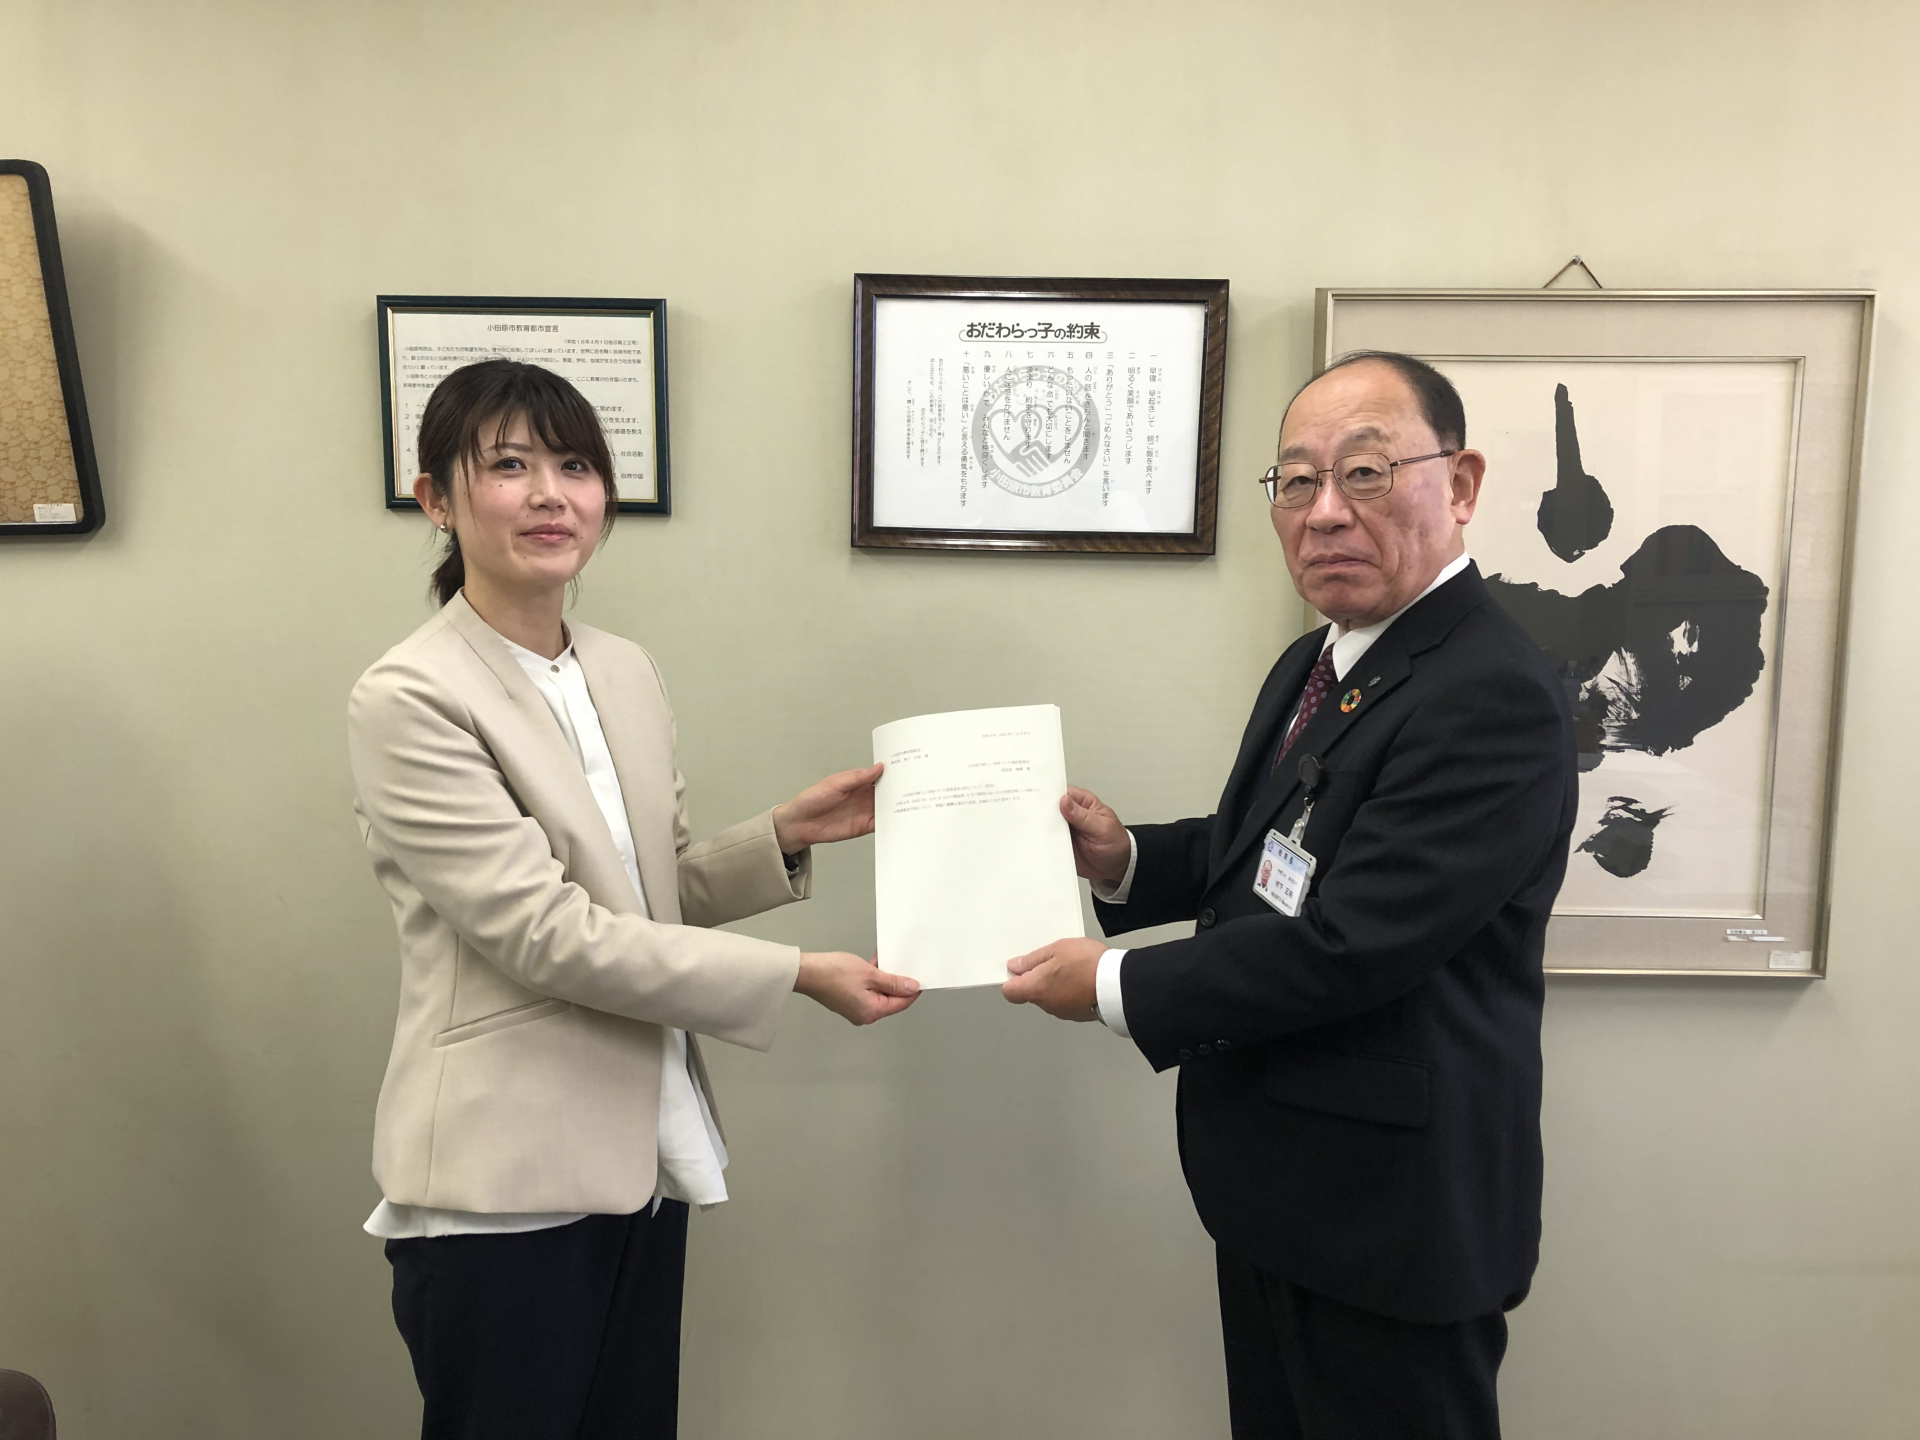 内山絵美子副委員長（小田原短期大学）と栁下教育長の写真